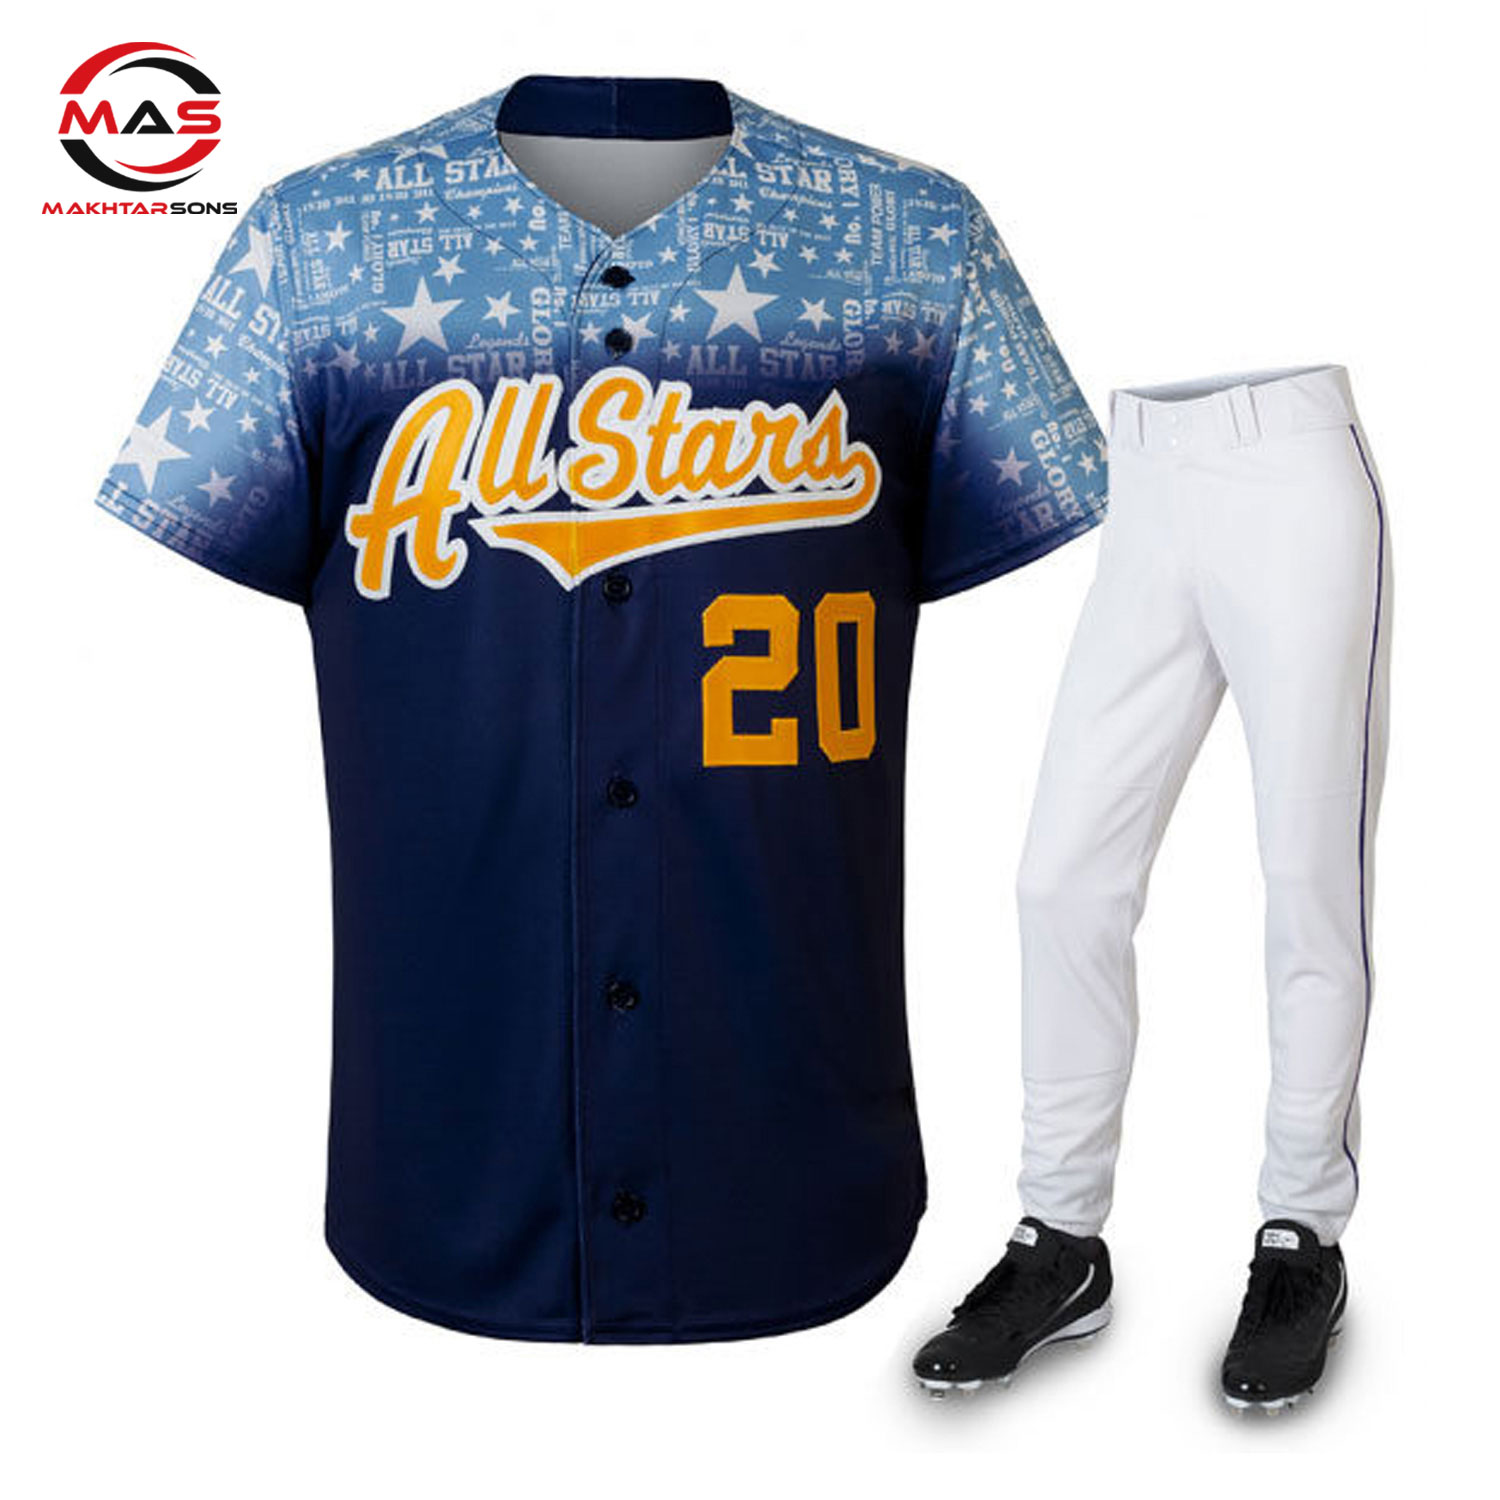 moeller-crusaders-baseball-uniform-set-concept-version-1-travel